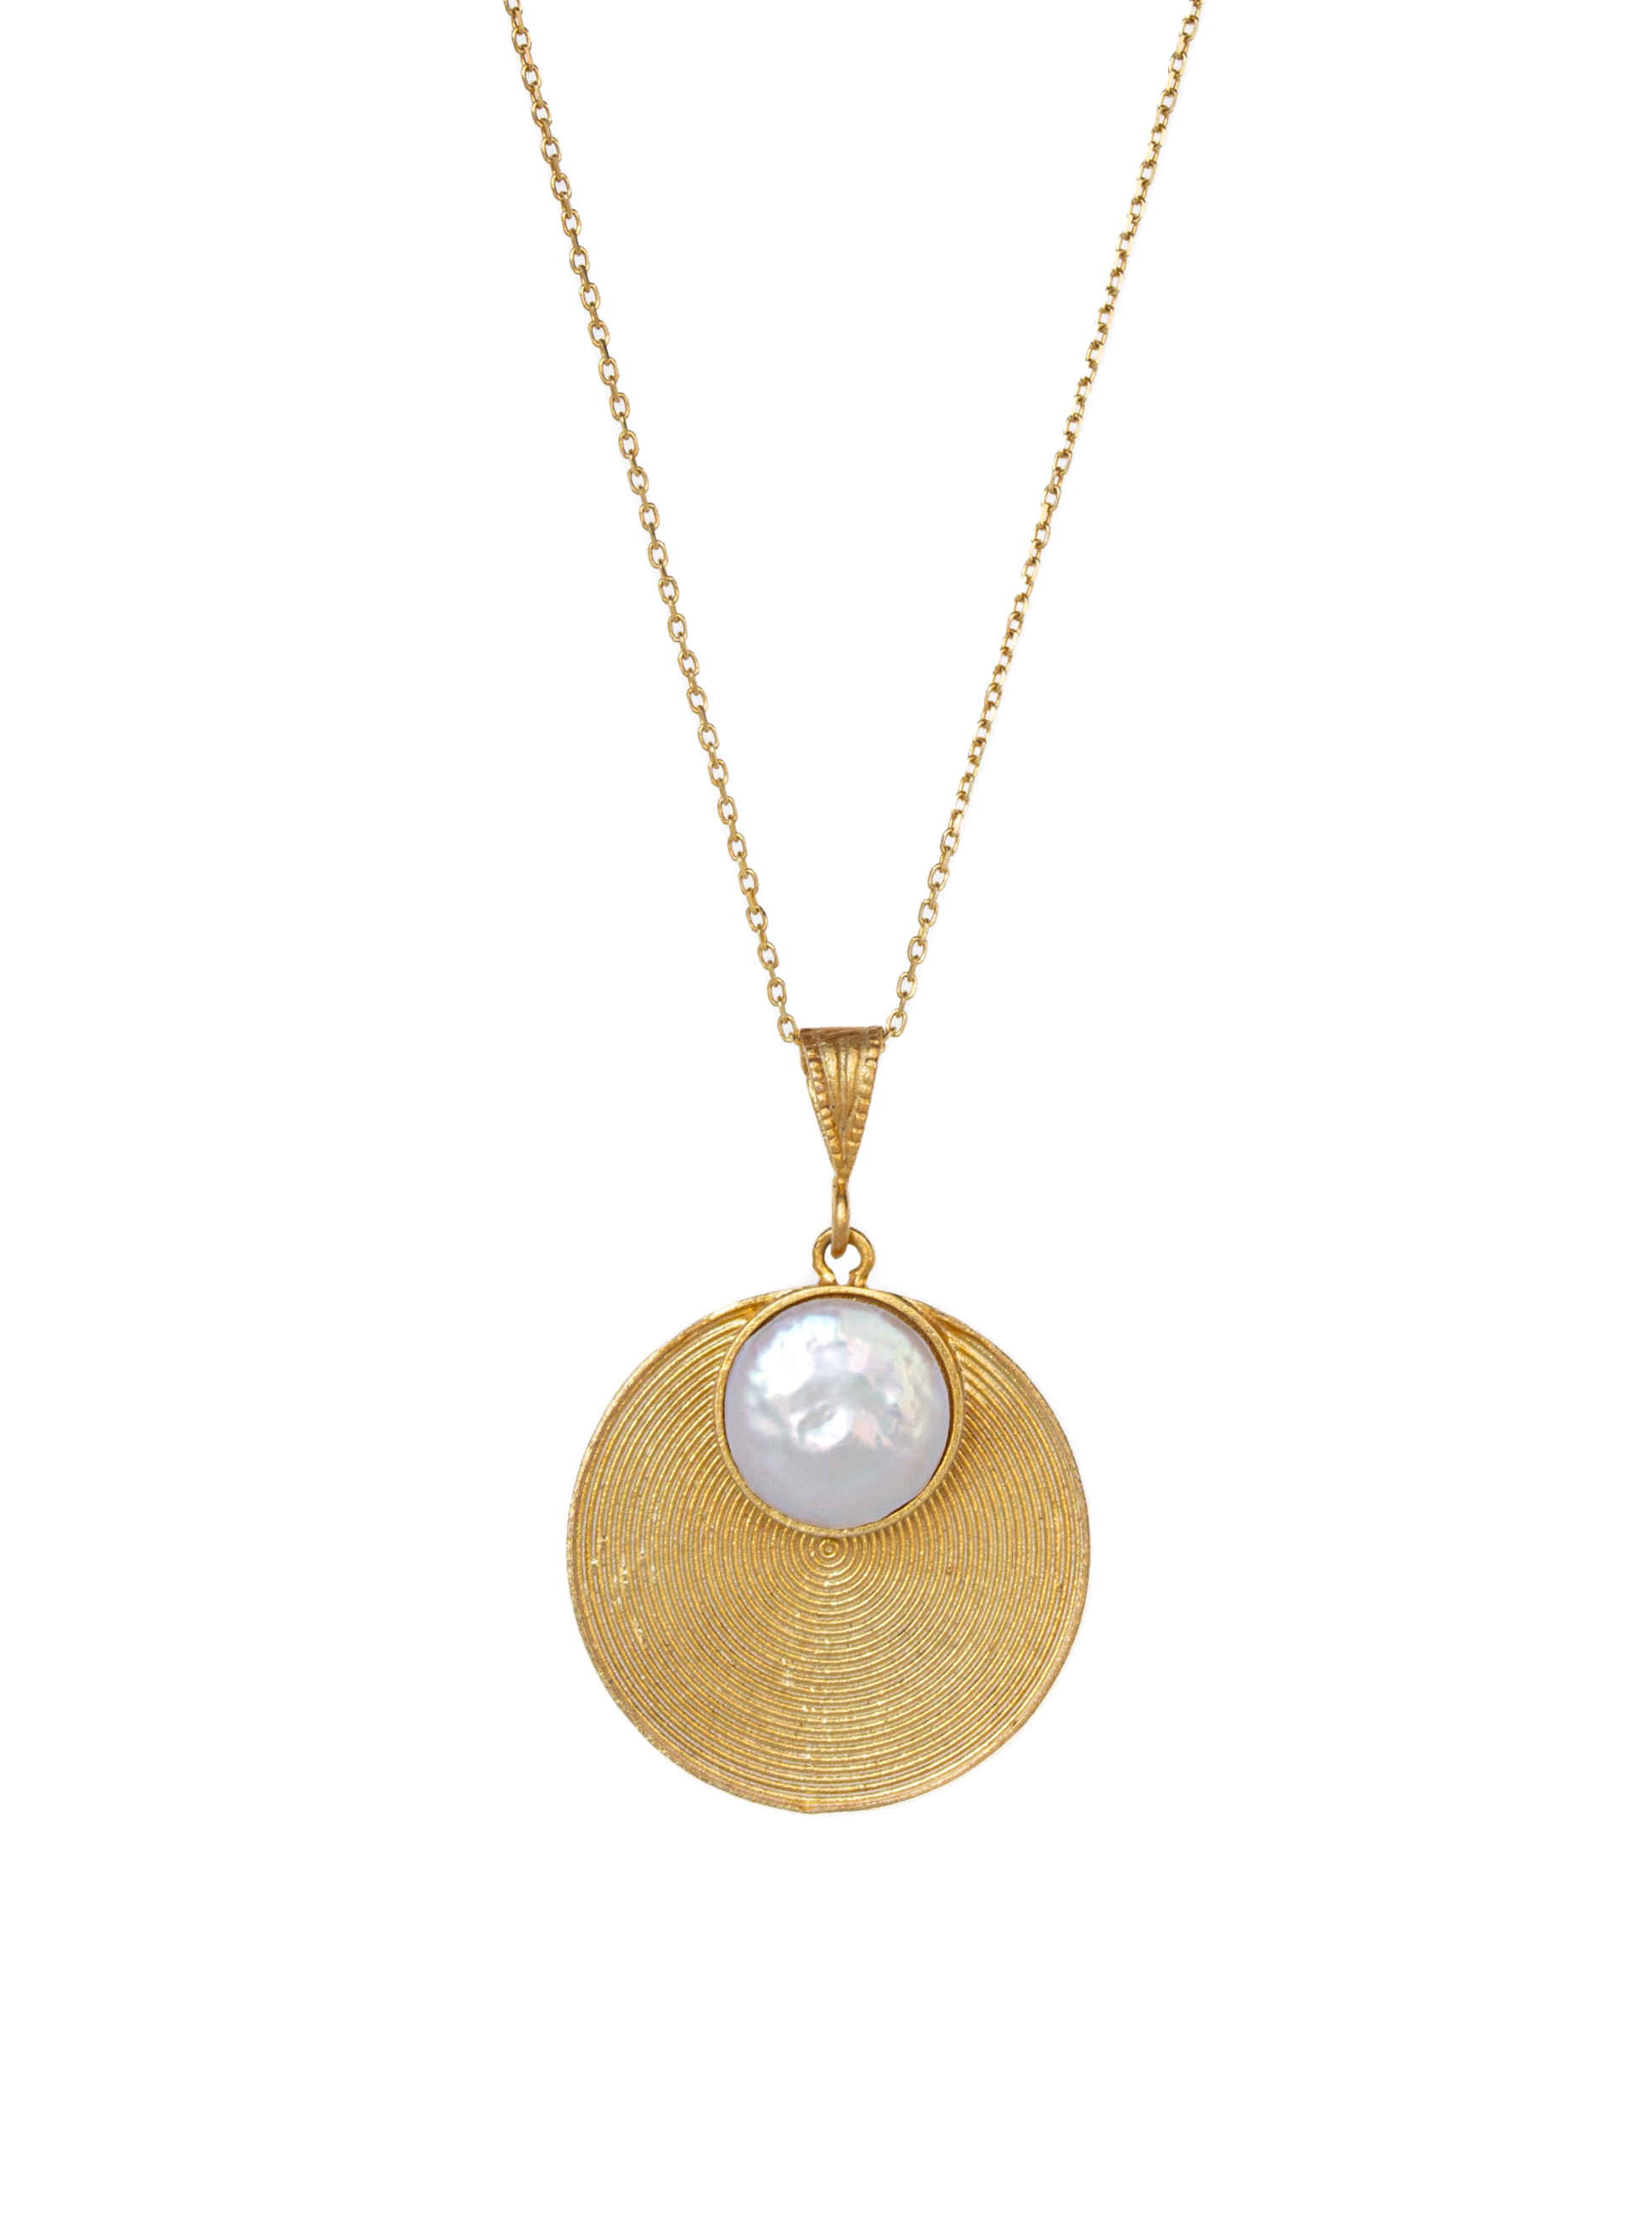 Luna Piena necklace with pearl